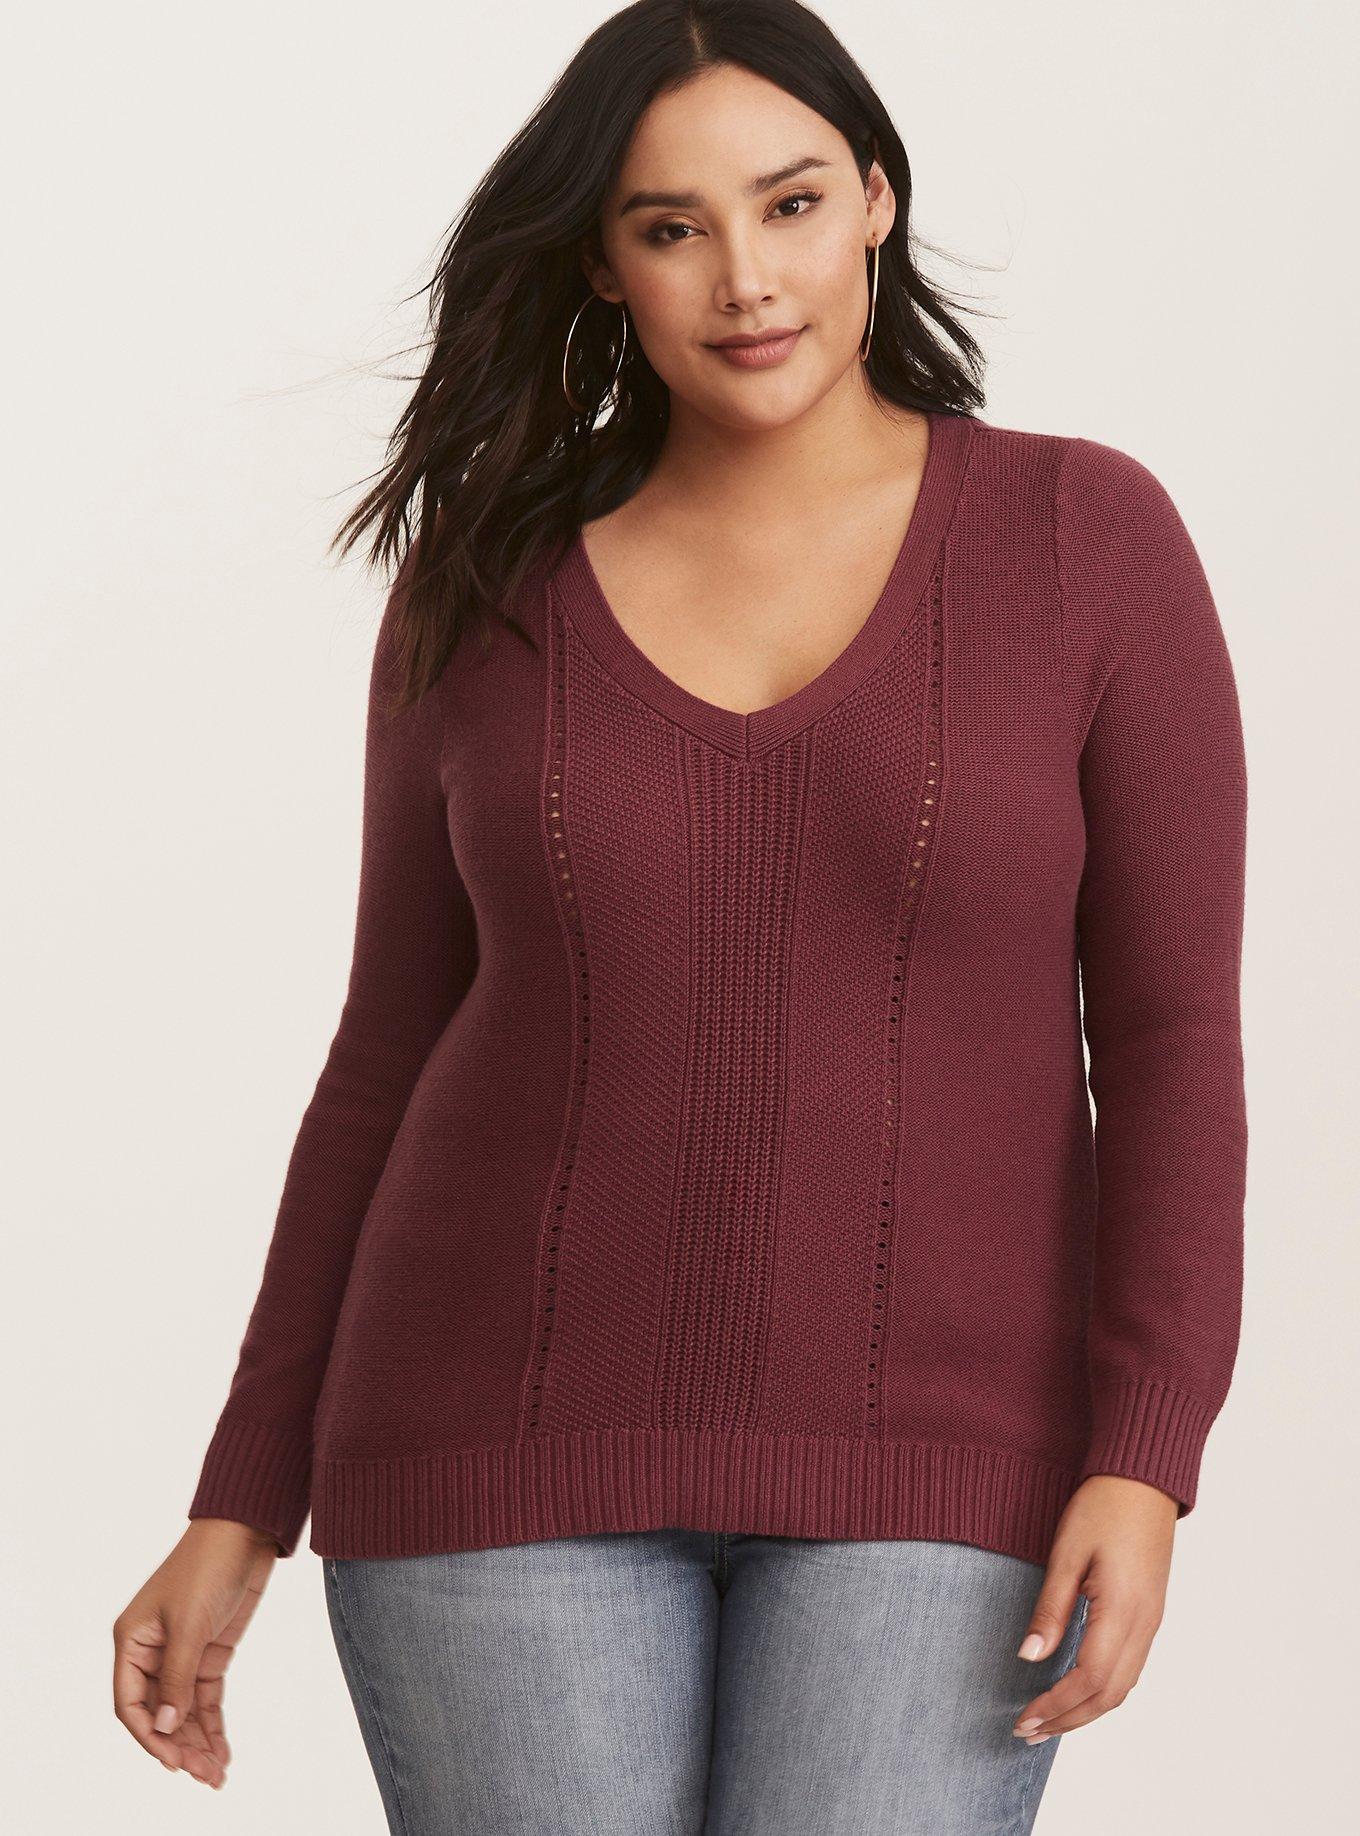 Plus Size - Burgundy V-Neck Pullover Sweater - Torrid